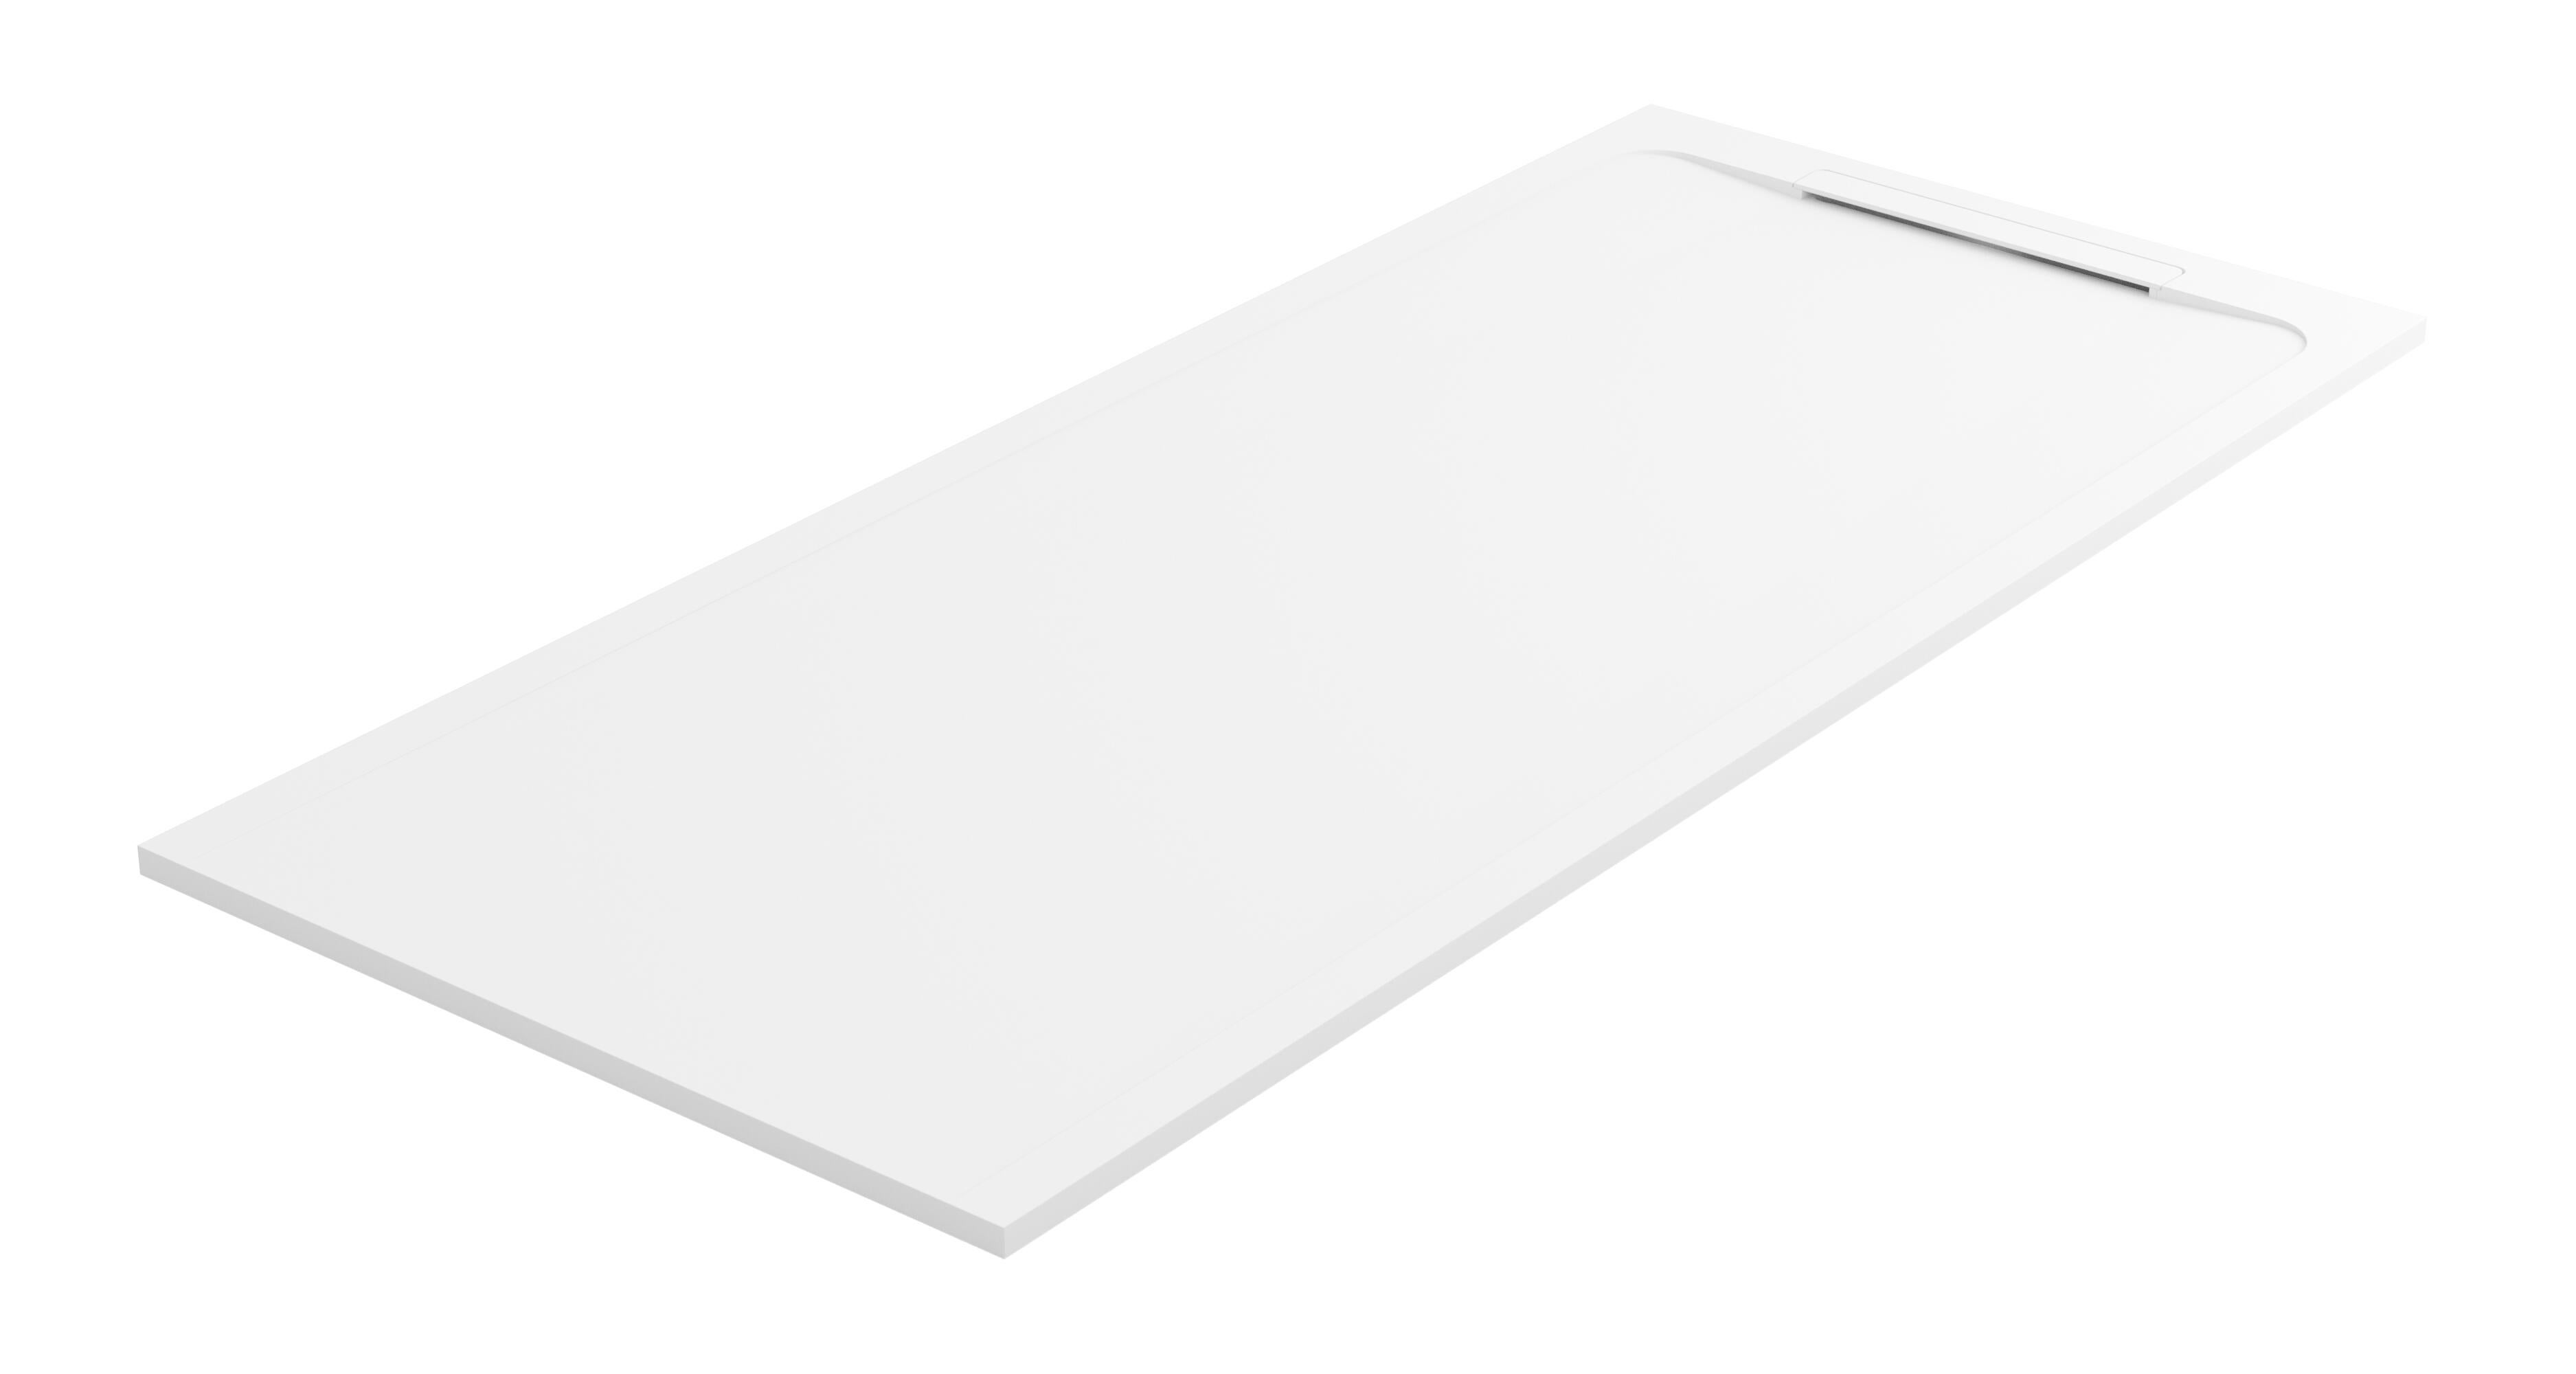 Plato de ducha huno 160x80 cm blanco